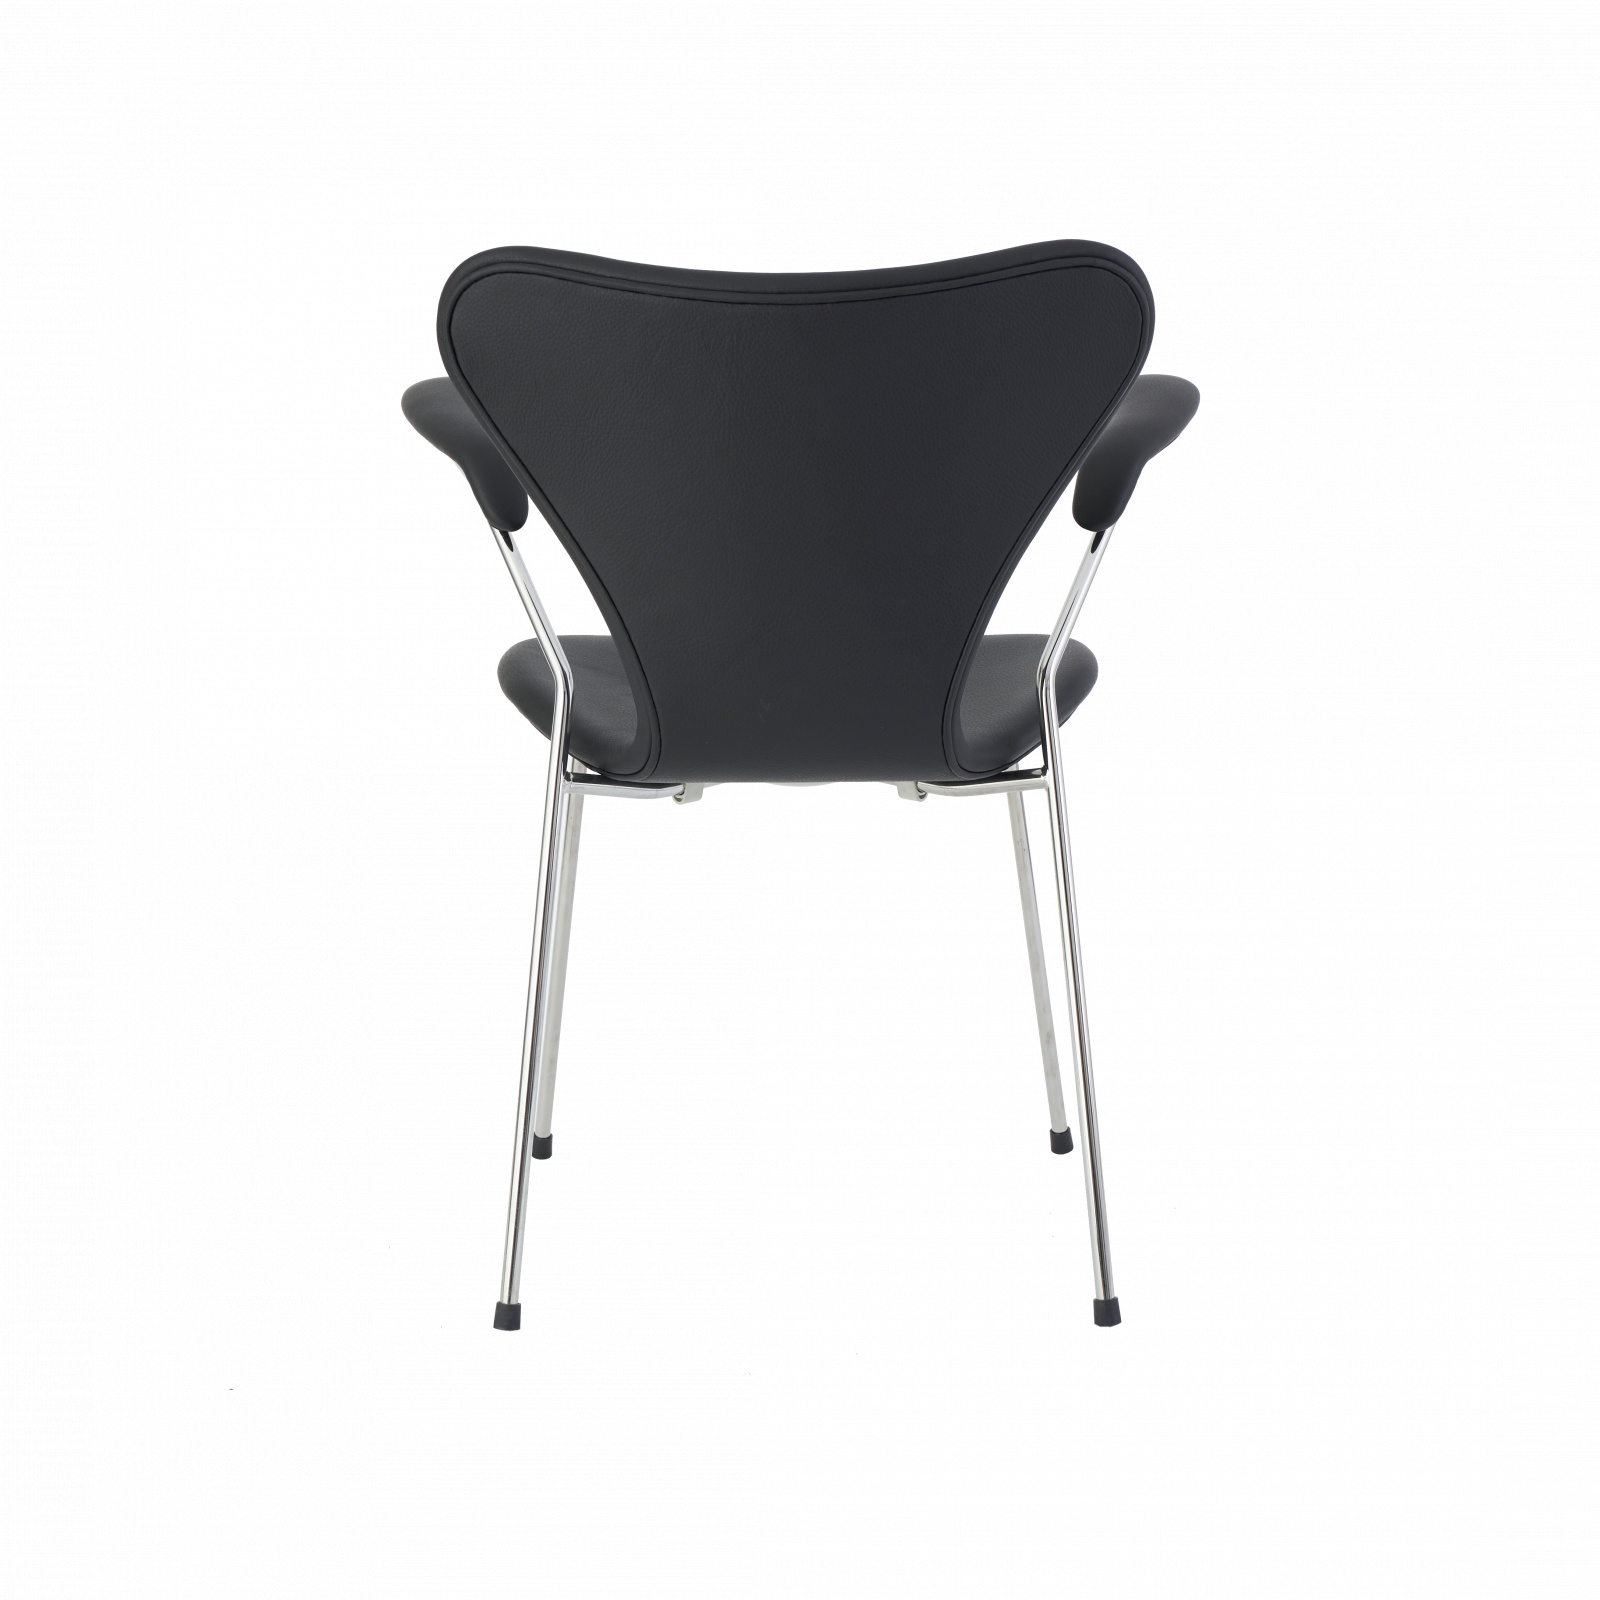 7er stol med armlæn - Arne Jacobsen – UpNordic